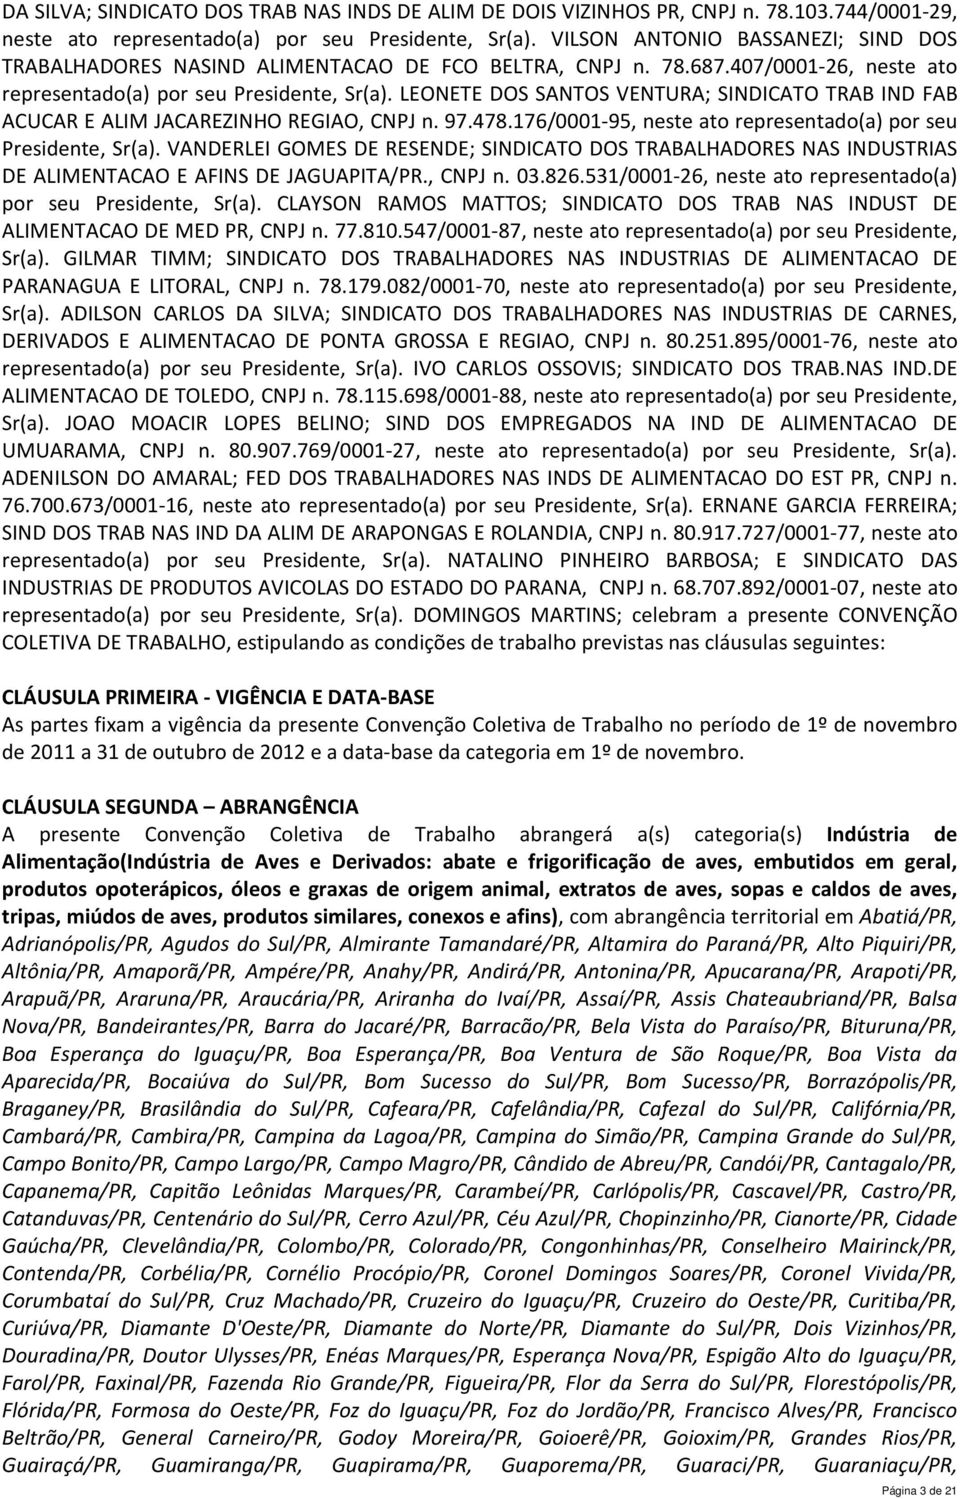 LEONETE DOS SANTOS VENTURA; SINDICATO TRAB IND FAB ACUCAR E ALIM JACAREZINHO REGIAO, CNPJ n. 97.478.176/0001-95, neste ato representado(a) por seu, Sr(a).